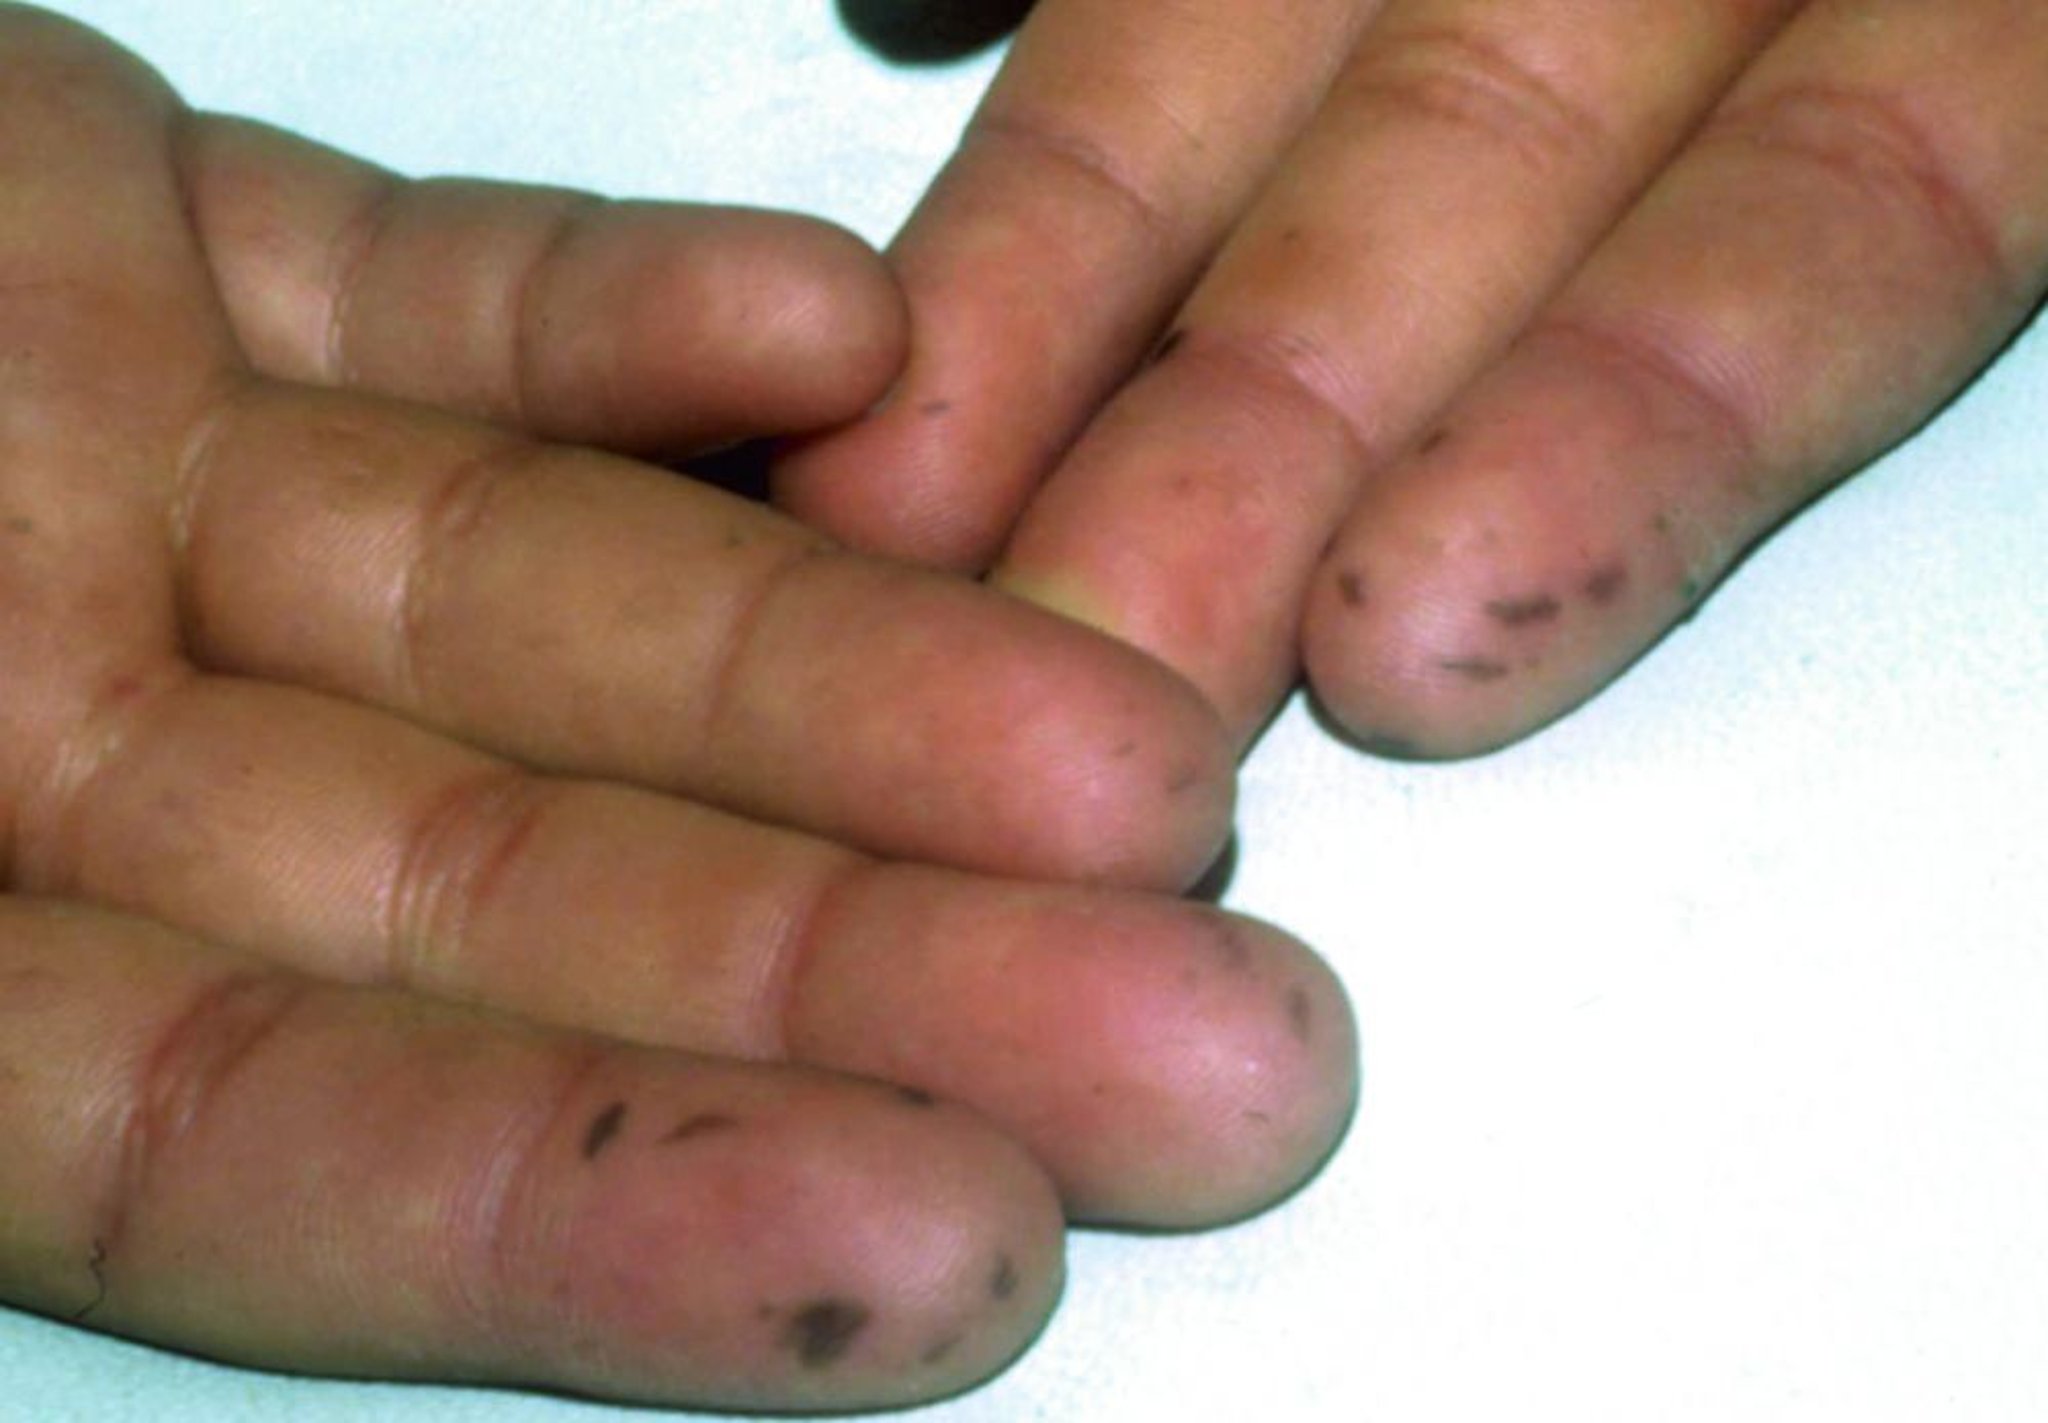 उंगलियों पर नीले-काले रंग के धब्बे (प्यूट्ज़-जेगर्स सिंड्रोम)